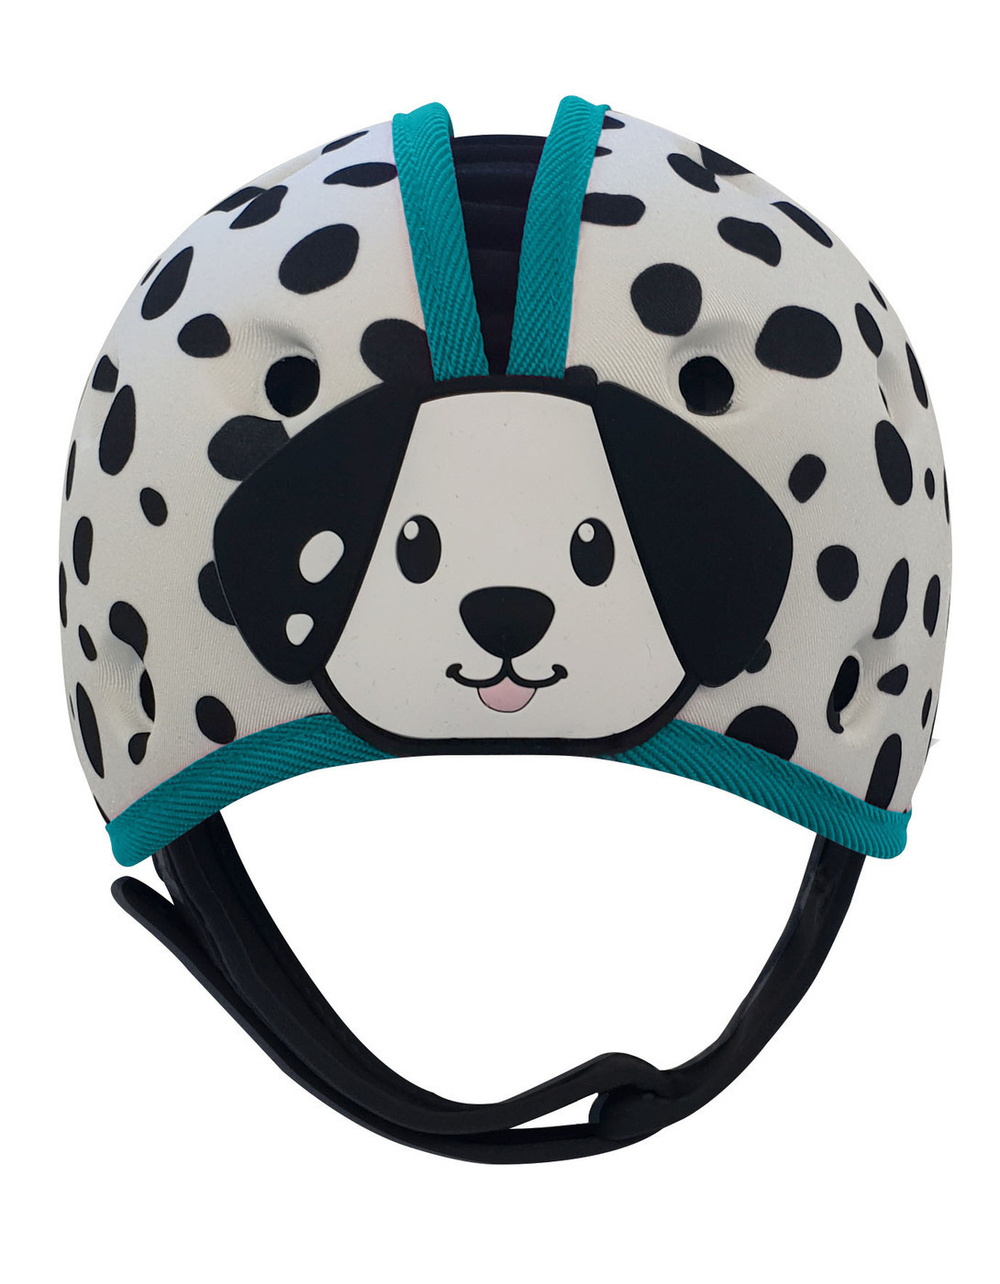 Мягкая шапка-шлем для защиты головы SafeheadBABY. Далматин